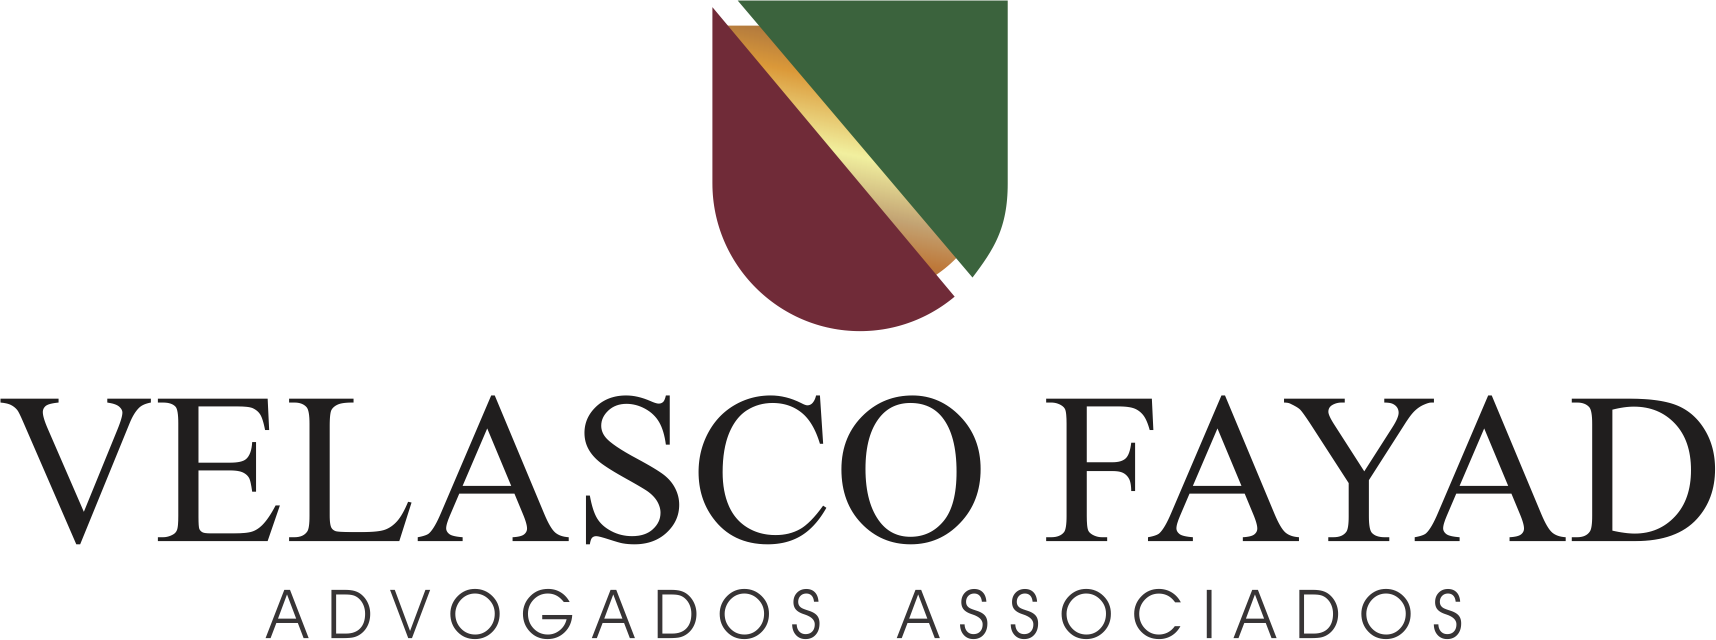 Velasco Fayad Advogados Associados